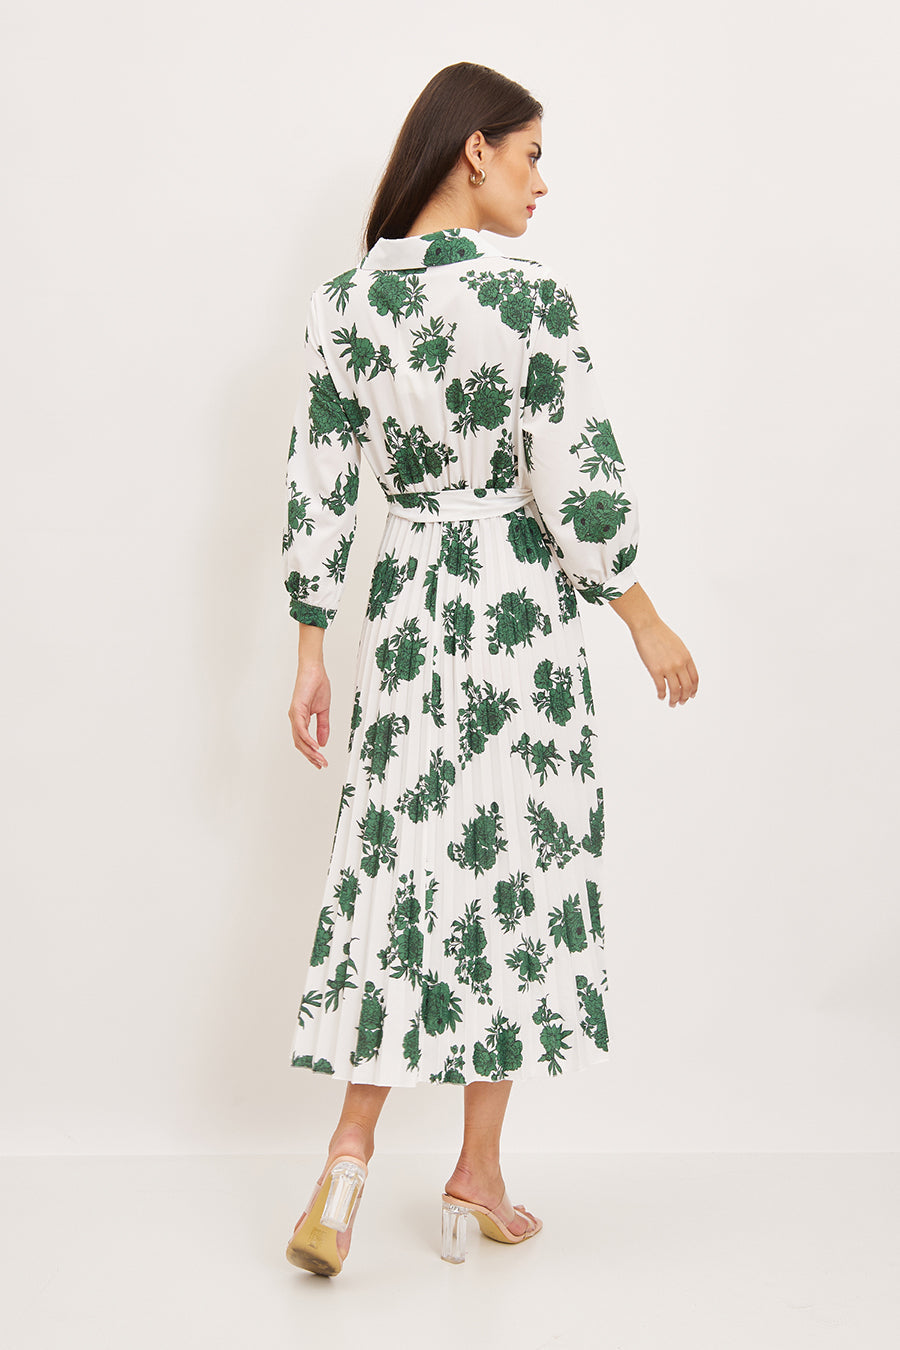 Γυναικείο φόρεμα Saphira, Πράσινο 3